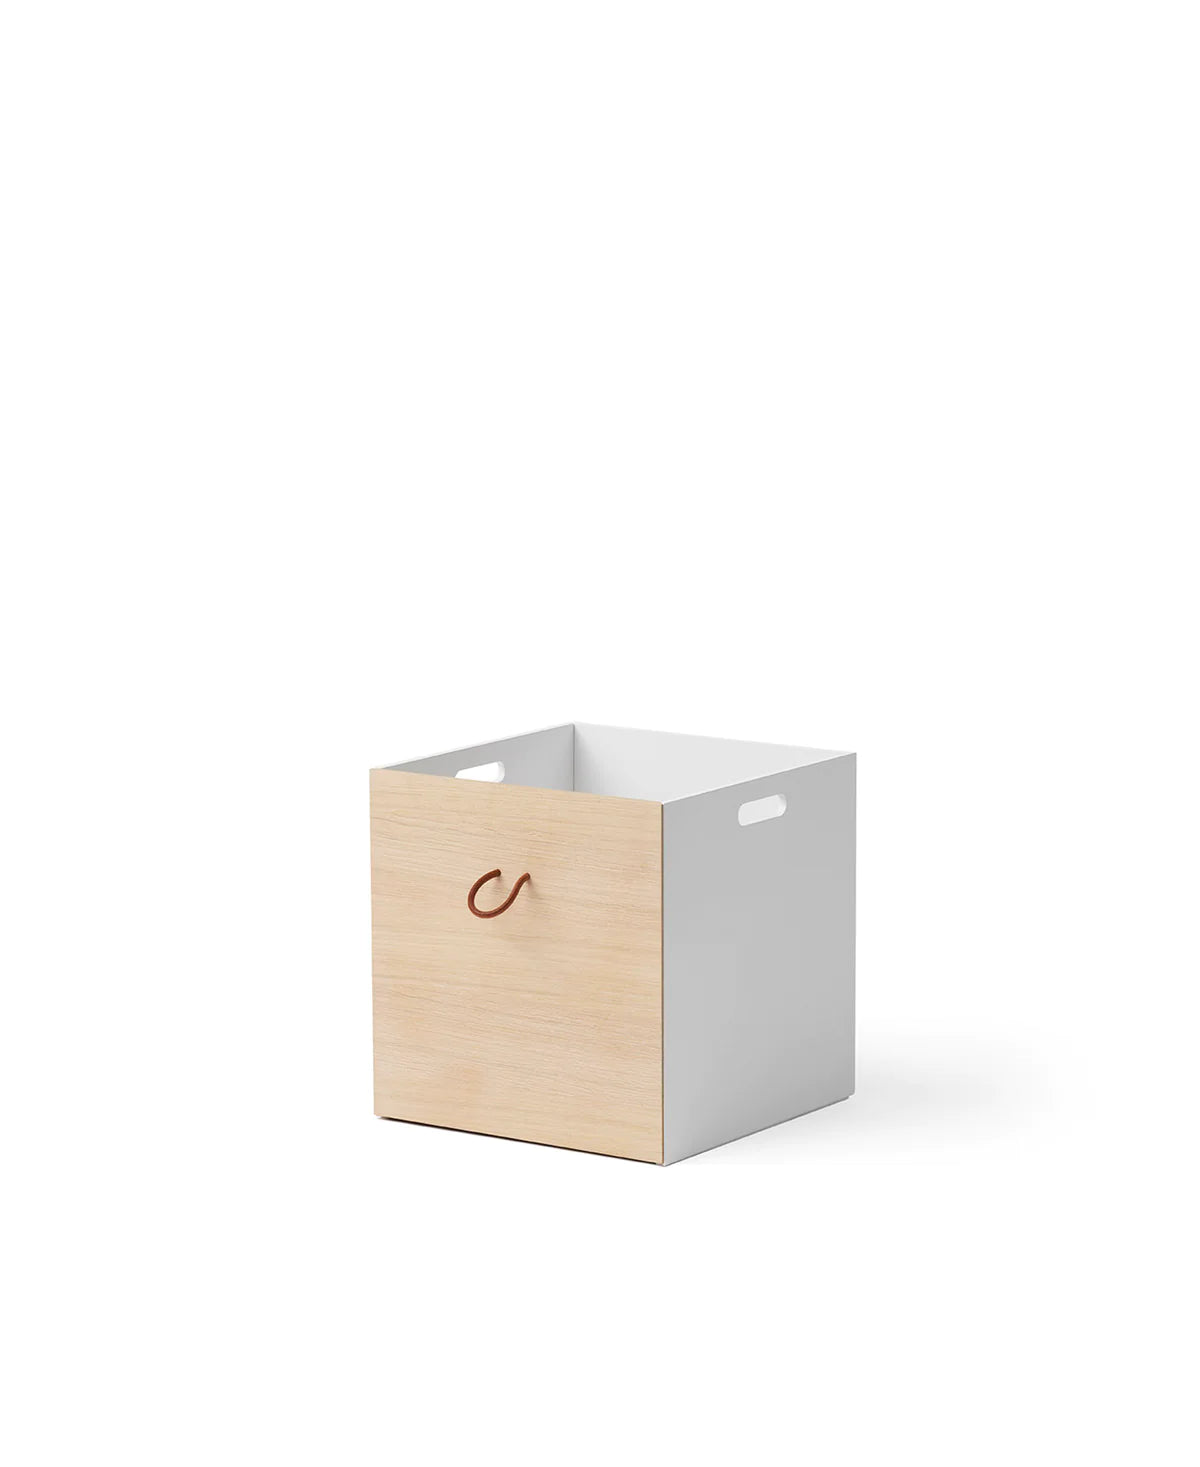 Oliver Furniture - Kisten für Wood Regal in weiss & eiche 2 er Set